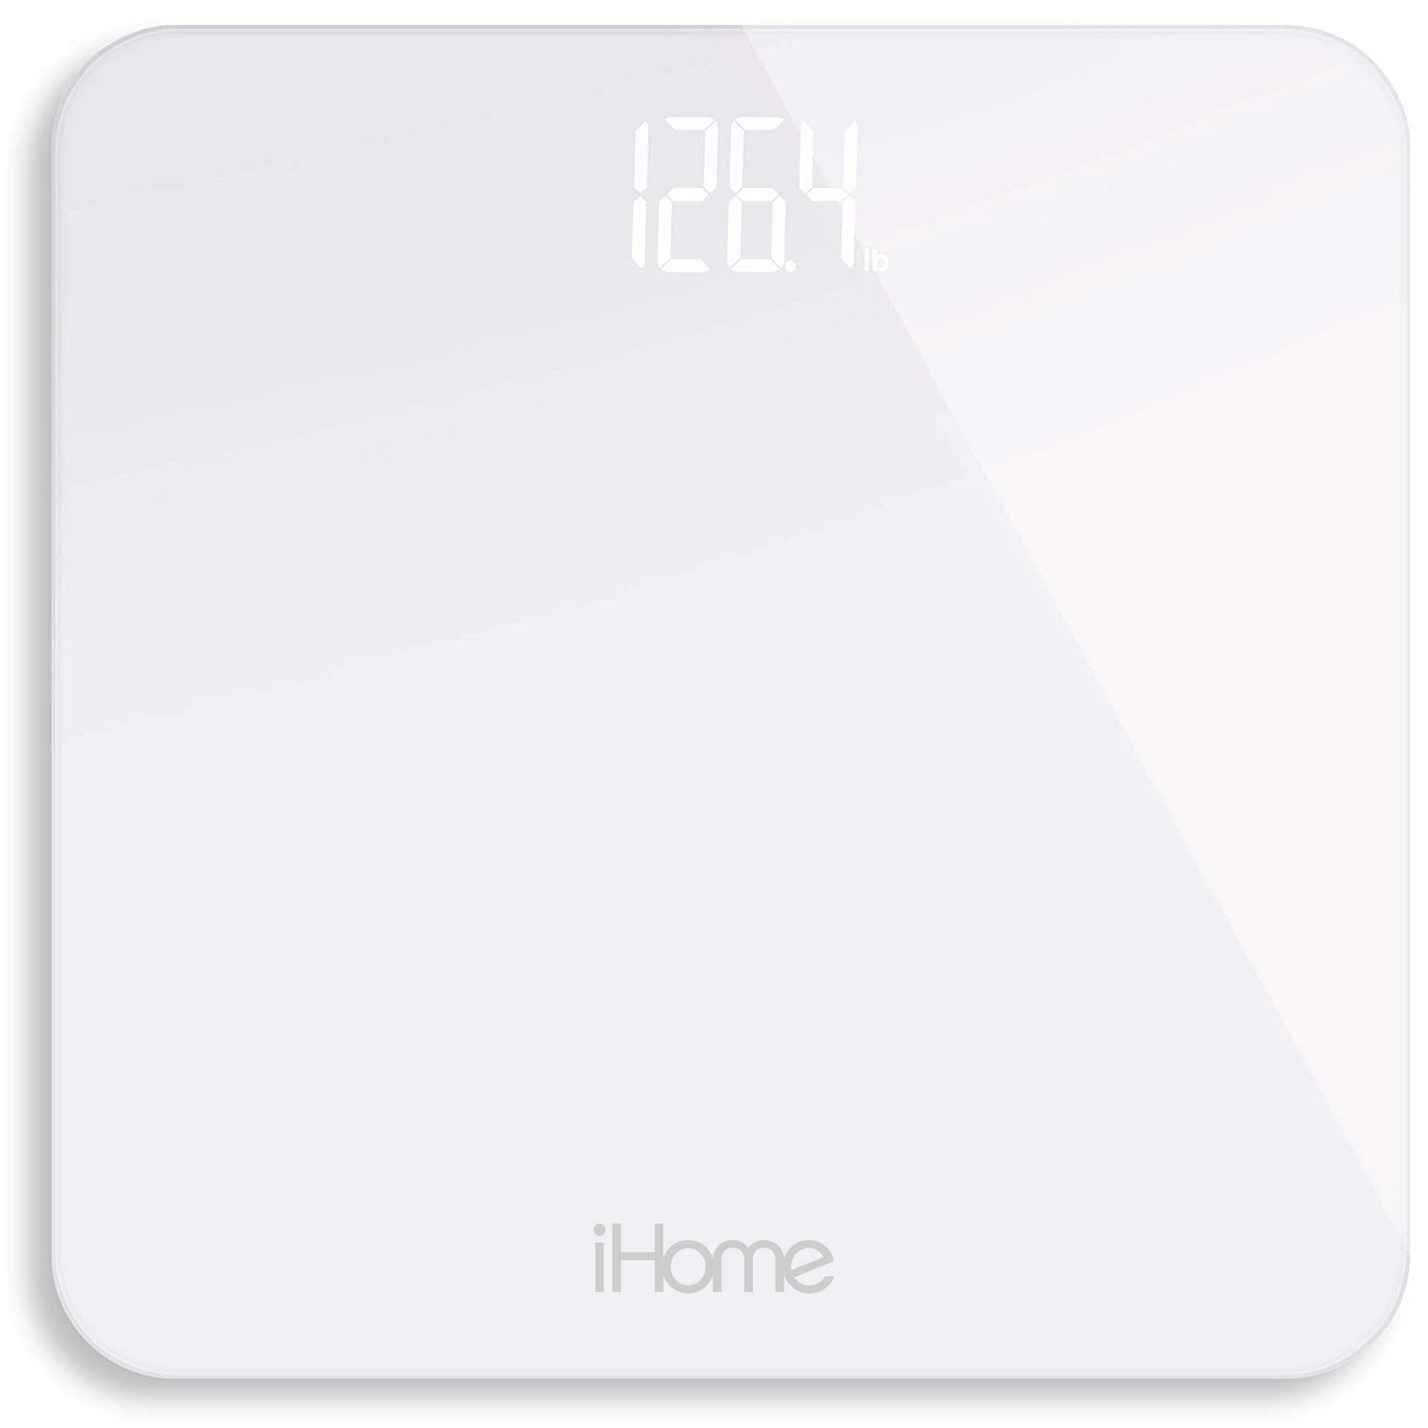 iHome Digital Scale